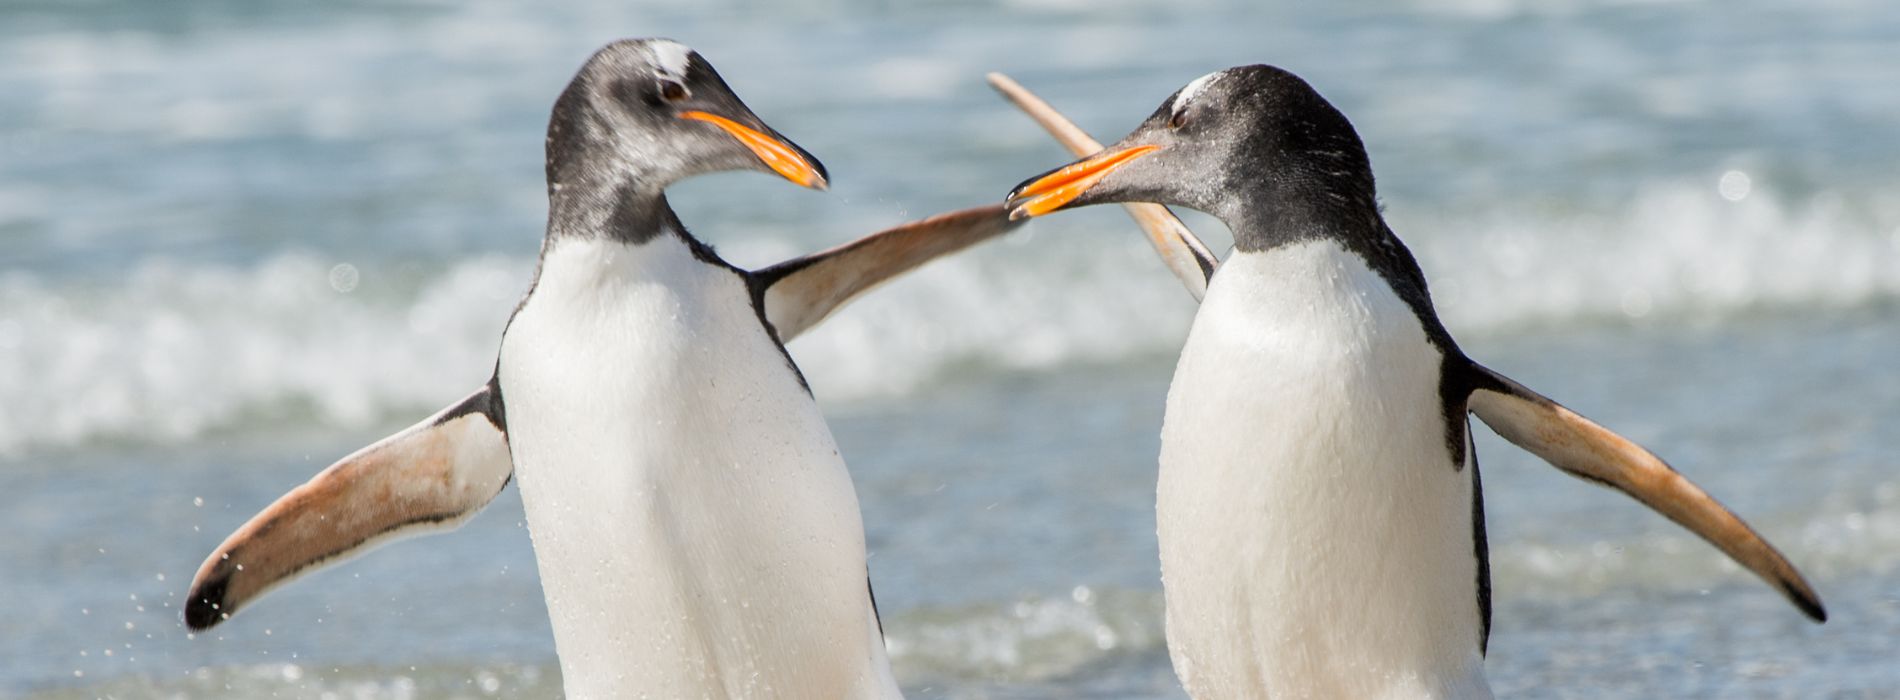 Are male penguins aggressive?